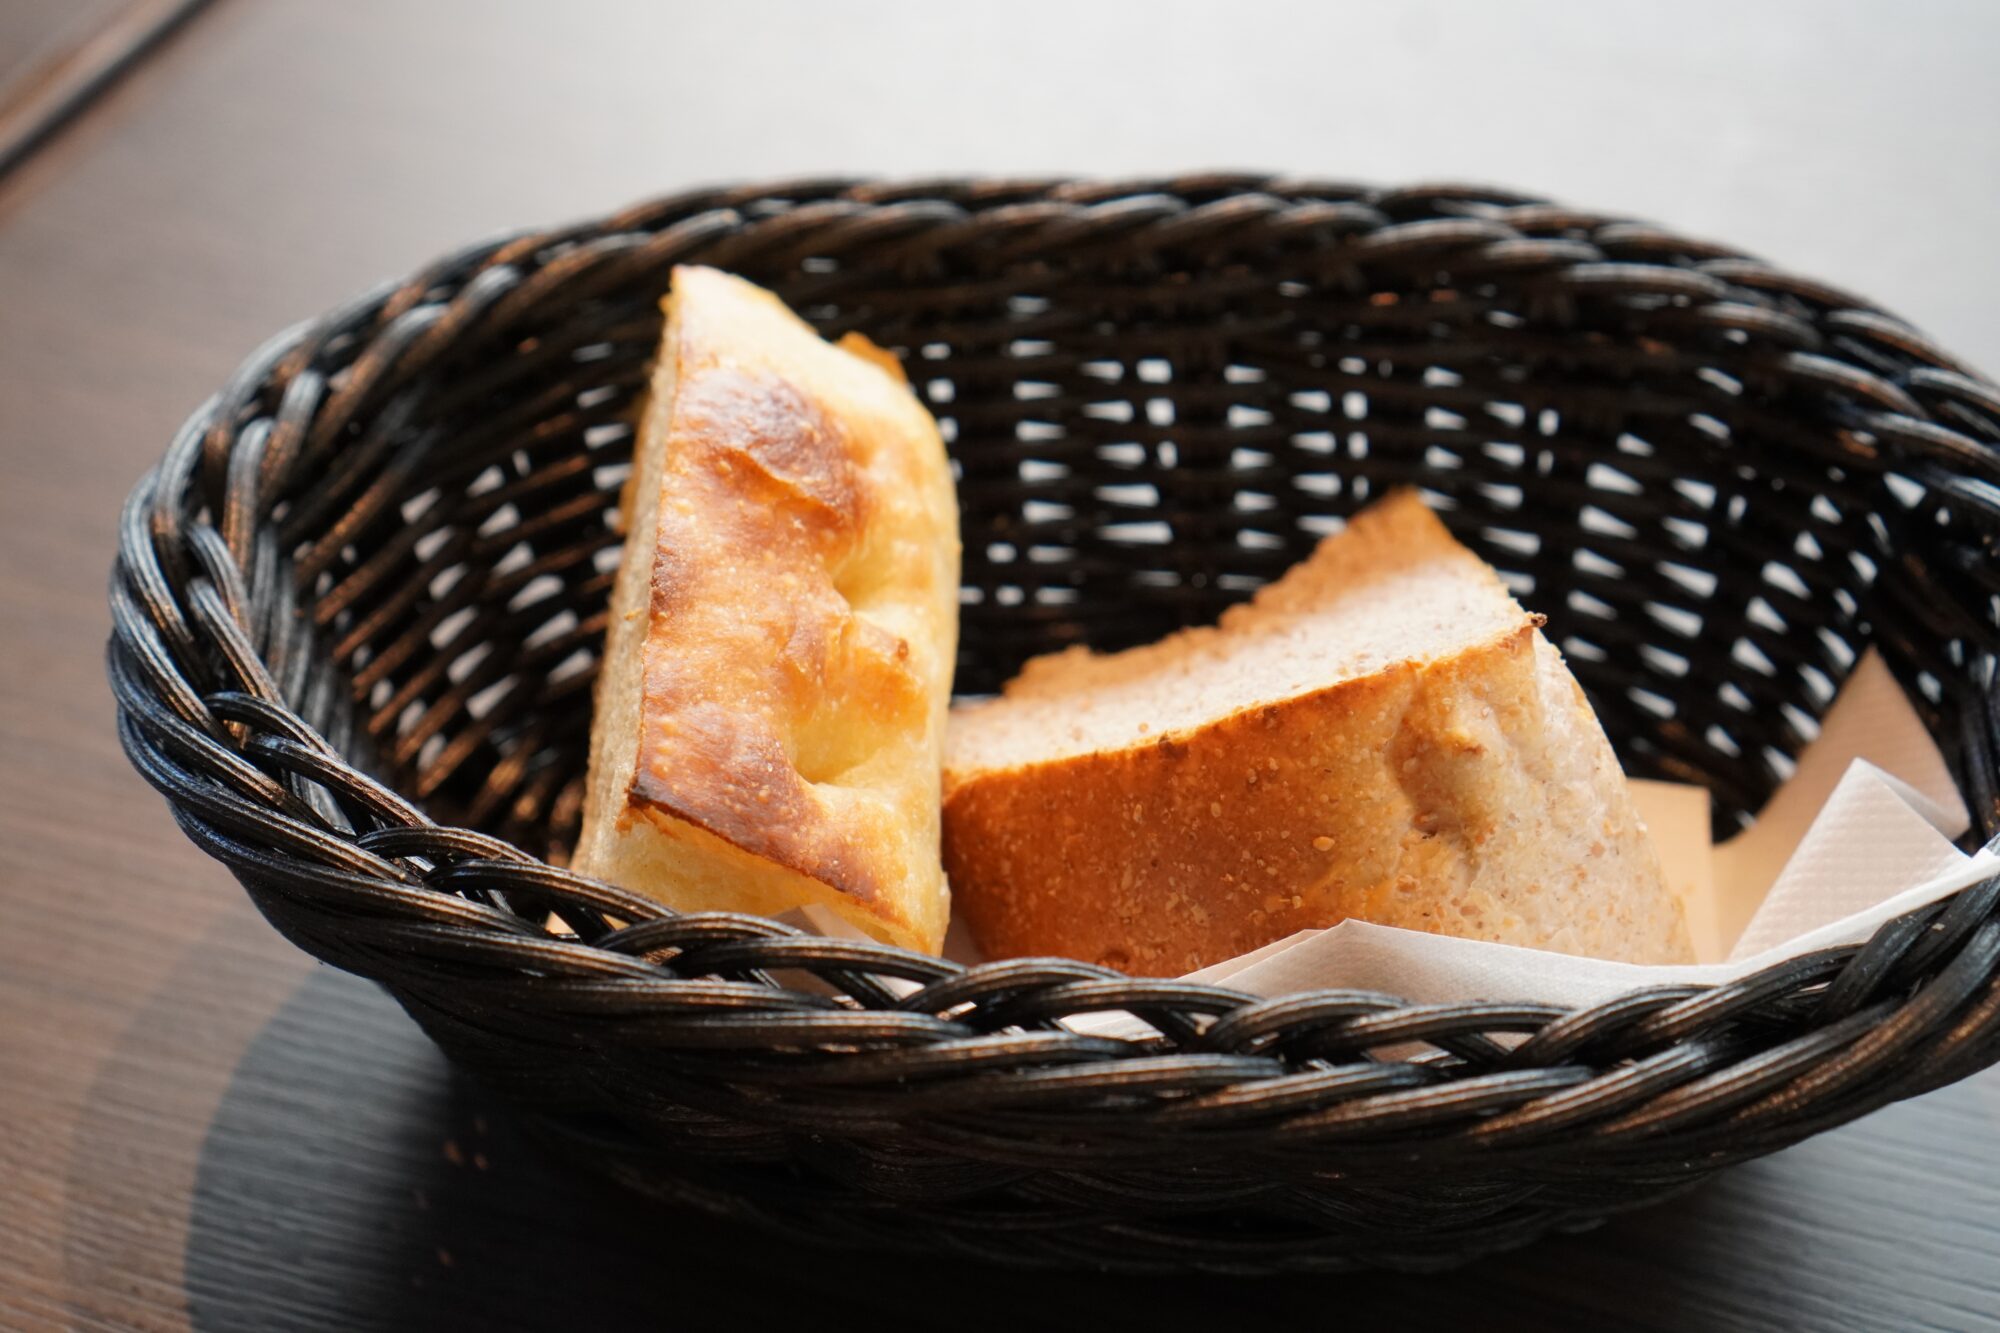 フォカッチャとクルミパン。パンの種類は変わるそうです